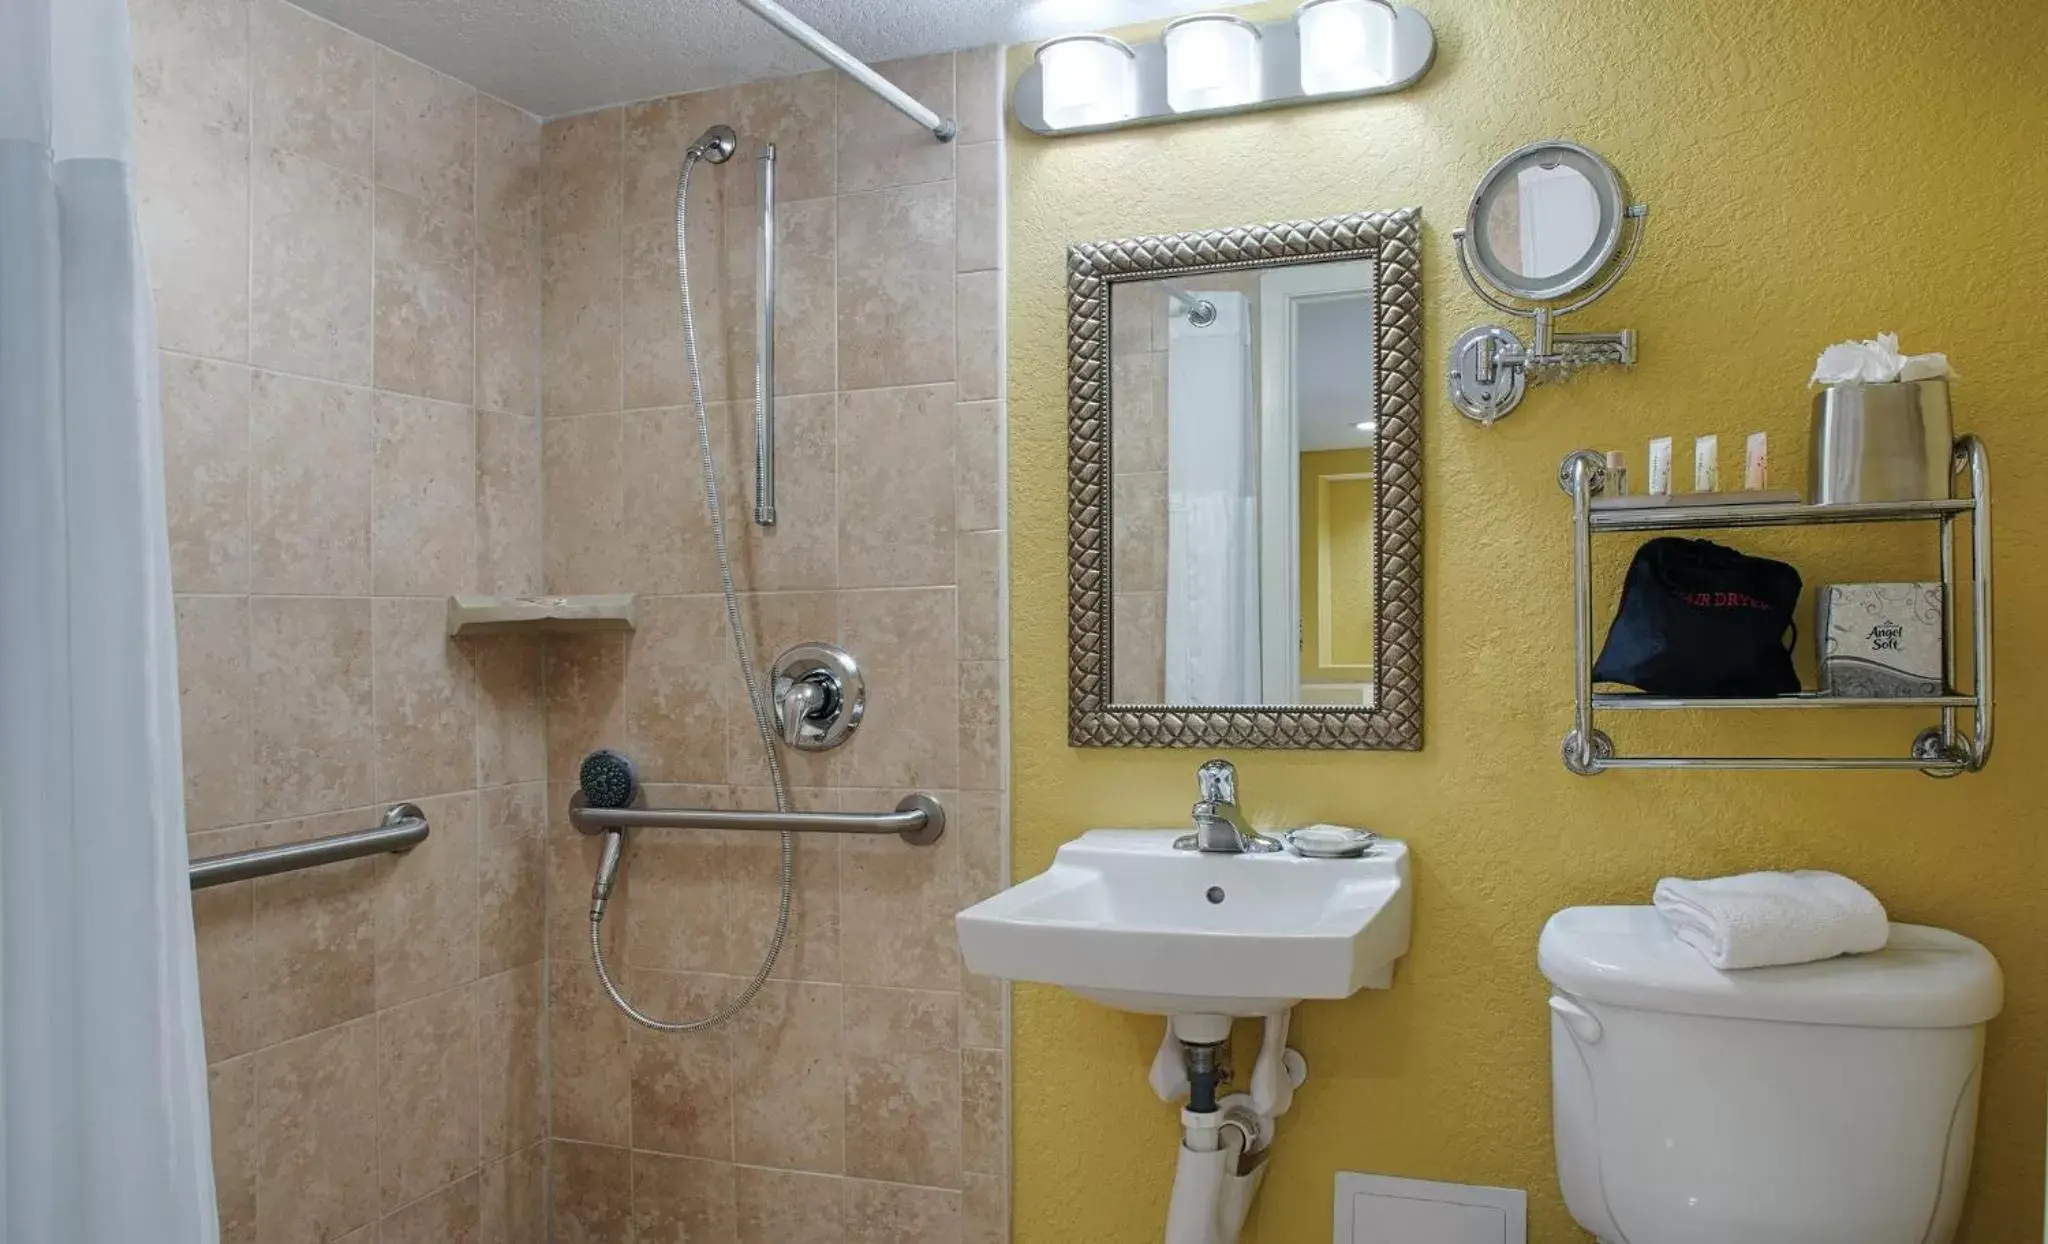 Photo of the whole room, Bathroom in Club Wyndham Santa Barbara